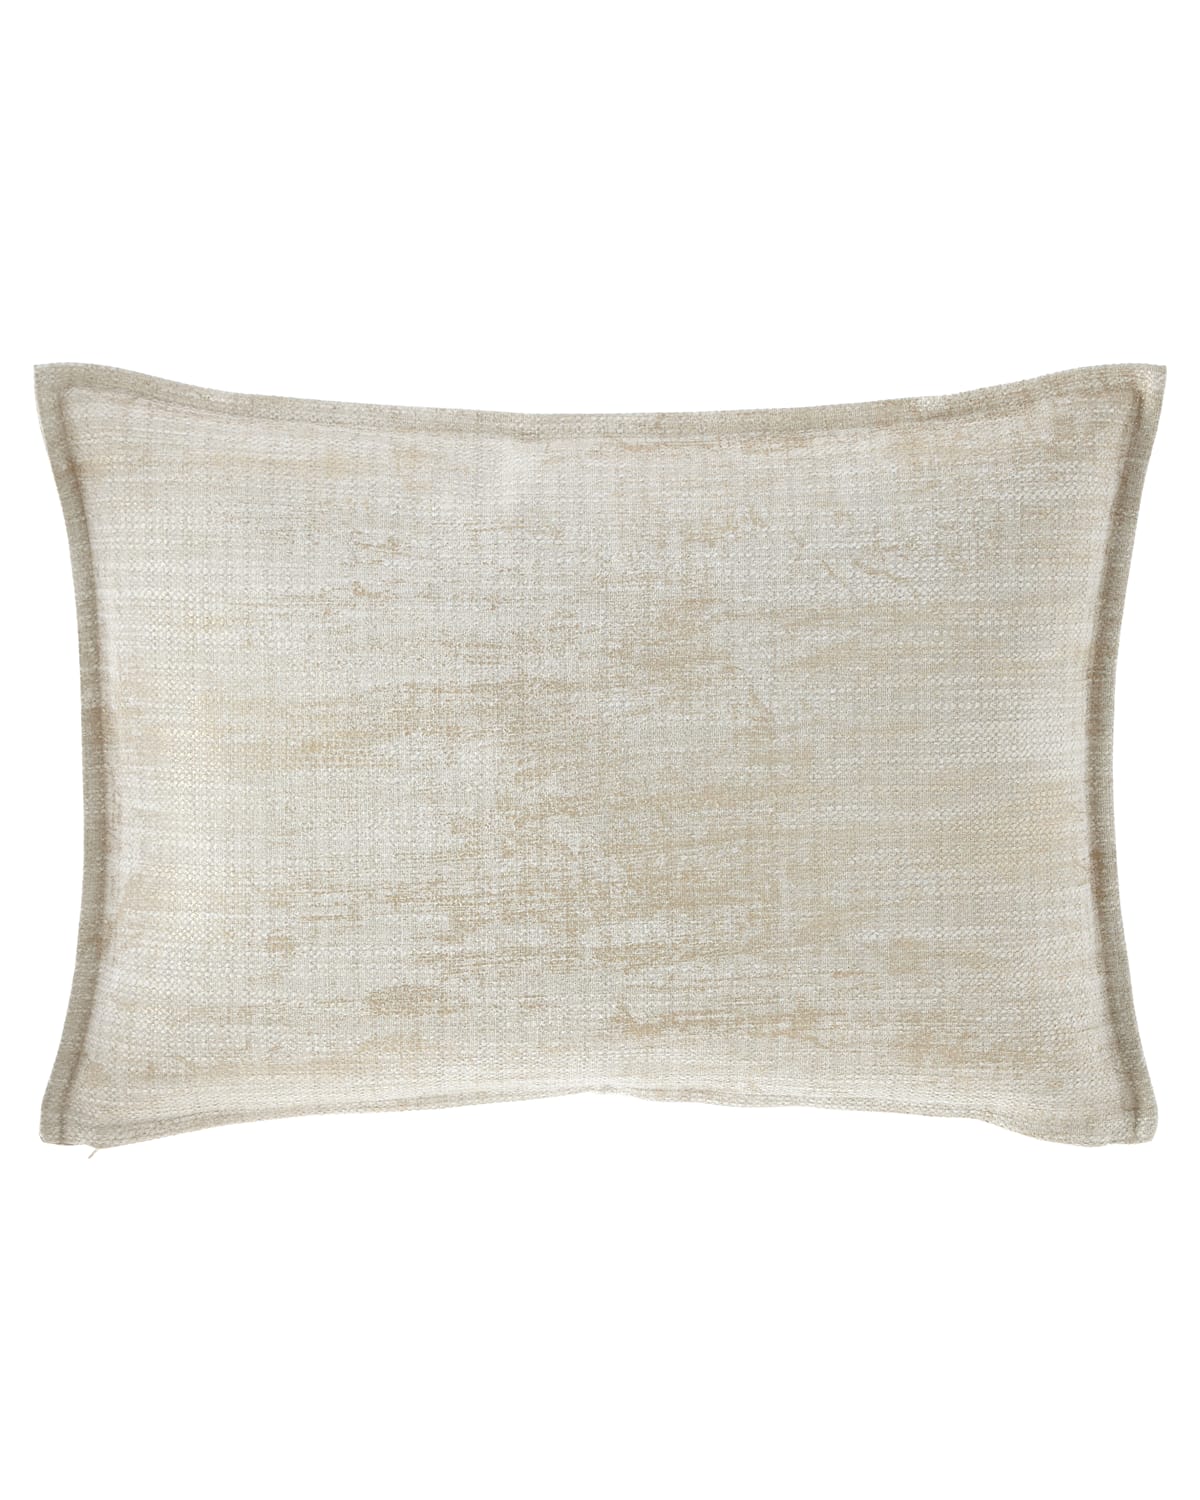 Image Fino Lino Linen & Lace Inessa Chaise Decorative Pillow